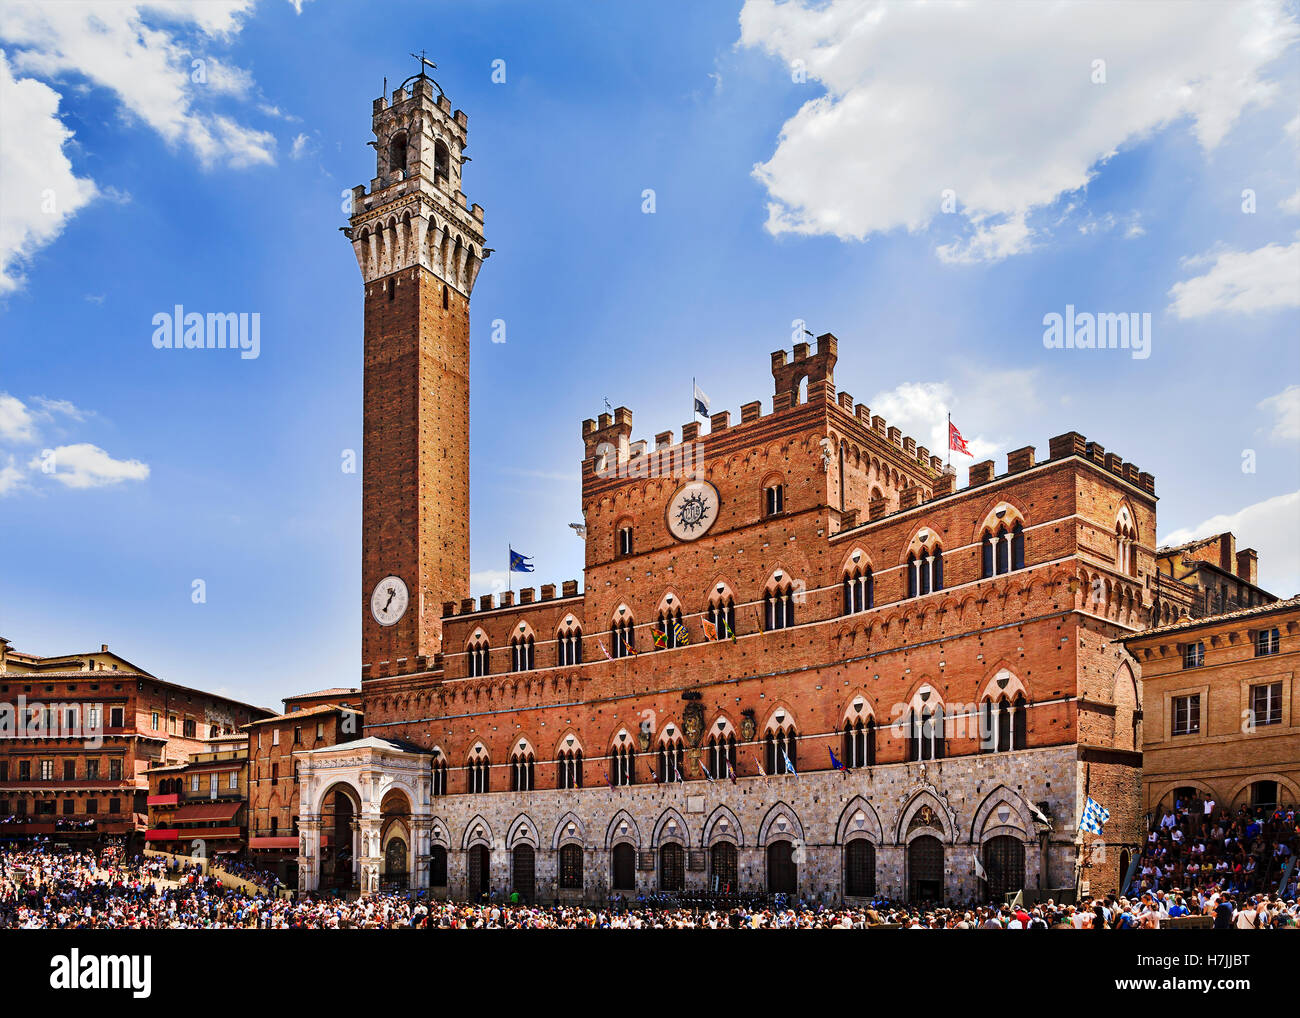 zentraler Platz von Siena Stadt Italiens Contrada tagsüber vor Rathaus Fassade und hoher Glockenturm. Stockfoto